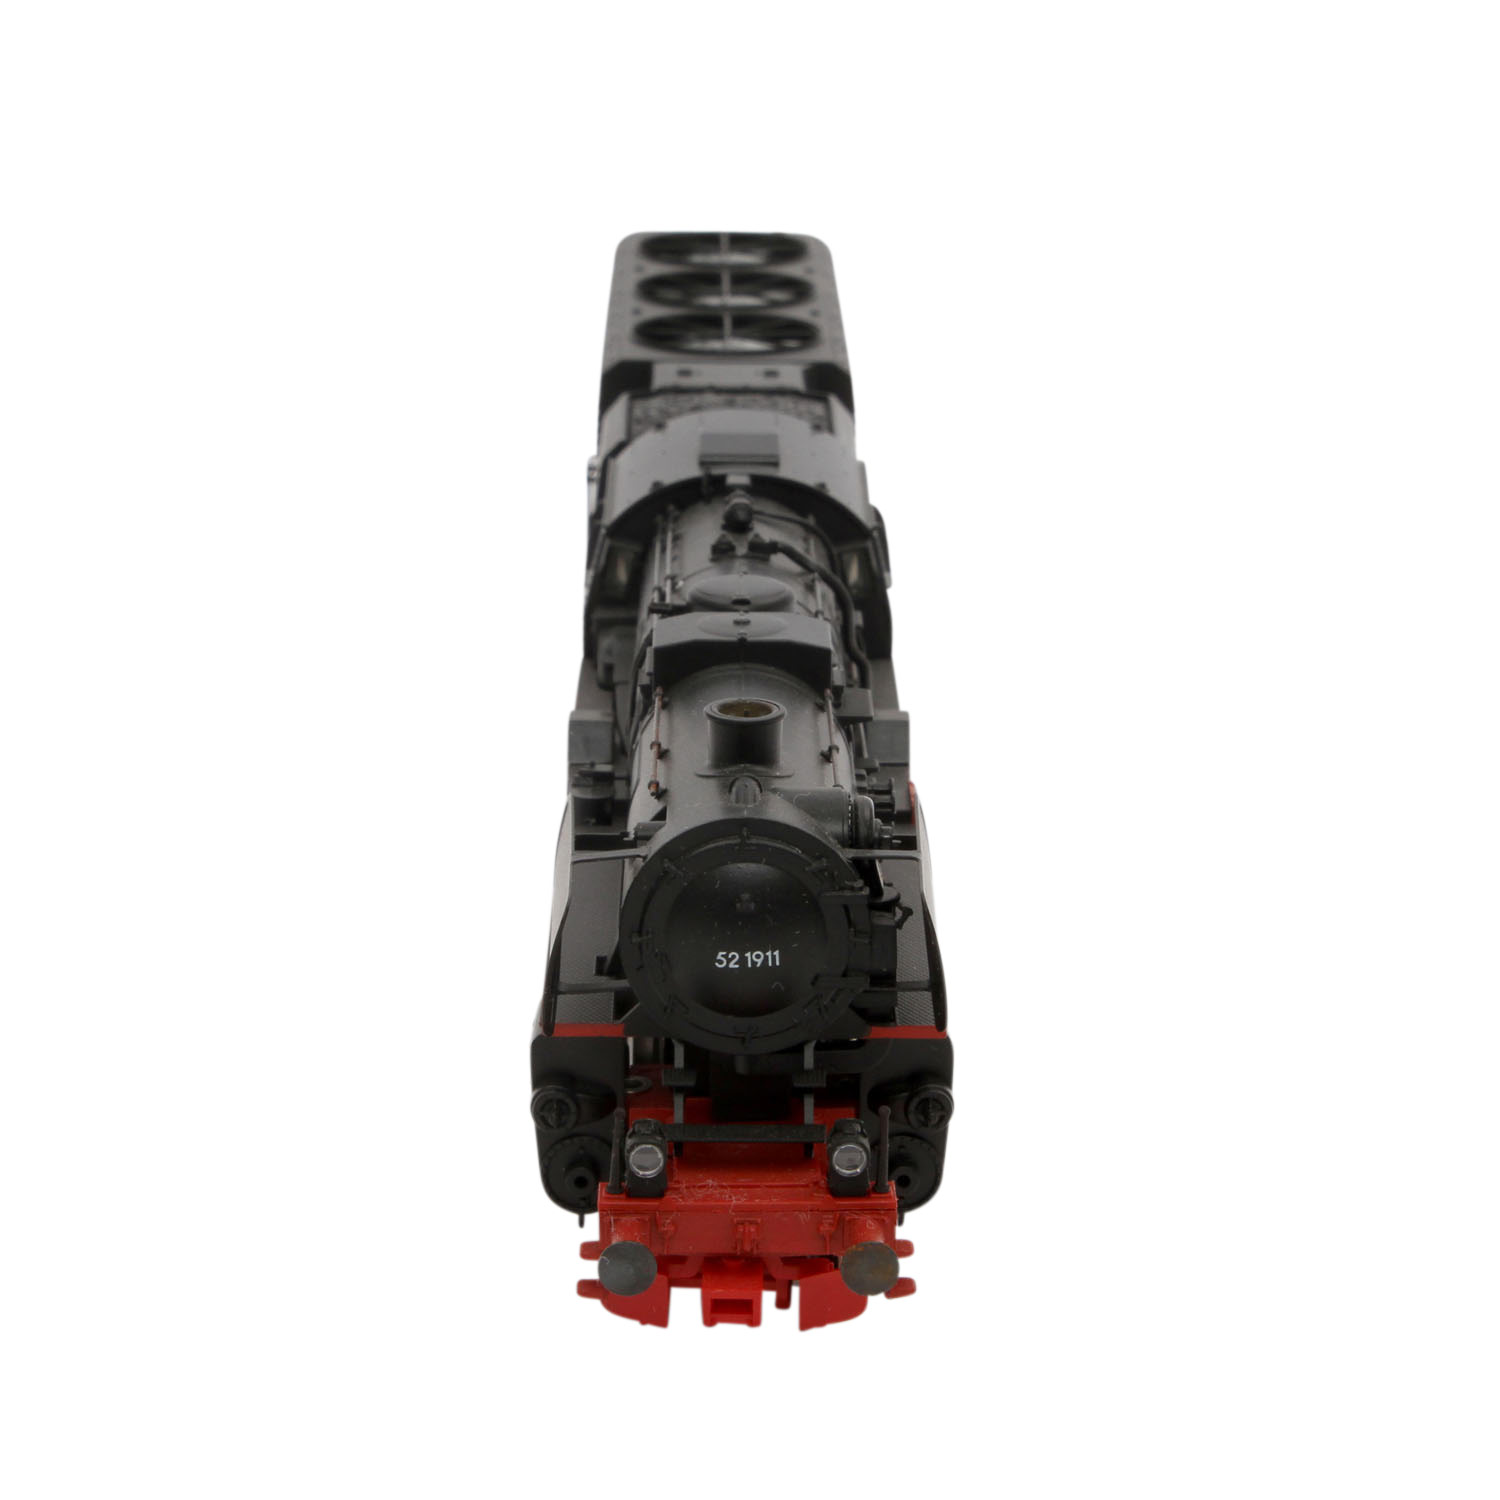 MÄRKLIN Dampflok mit Tender 37171, digital H0,Guss/Kunststoff, schwarz/rot, BR 52 K der DB, BN 52 - Image 5 of 6